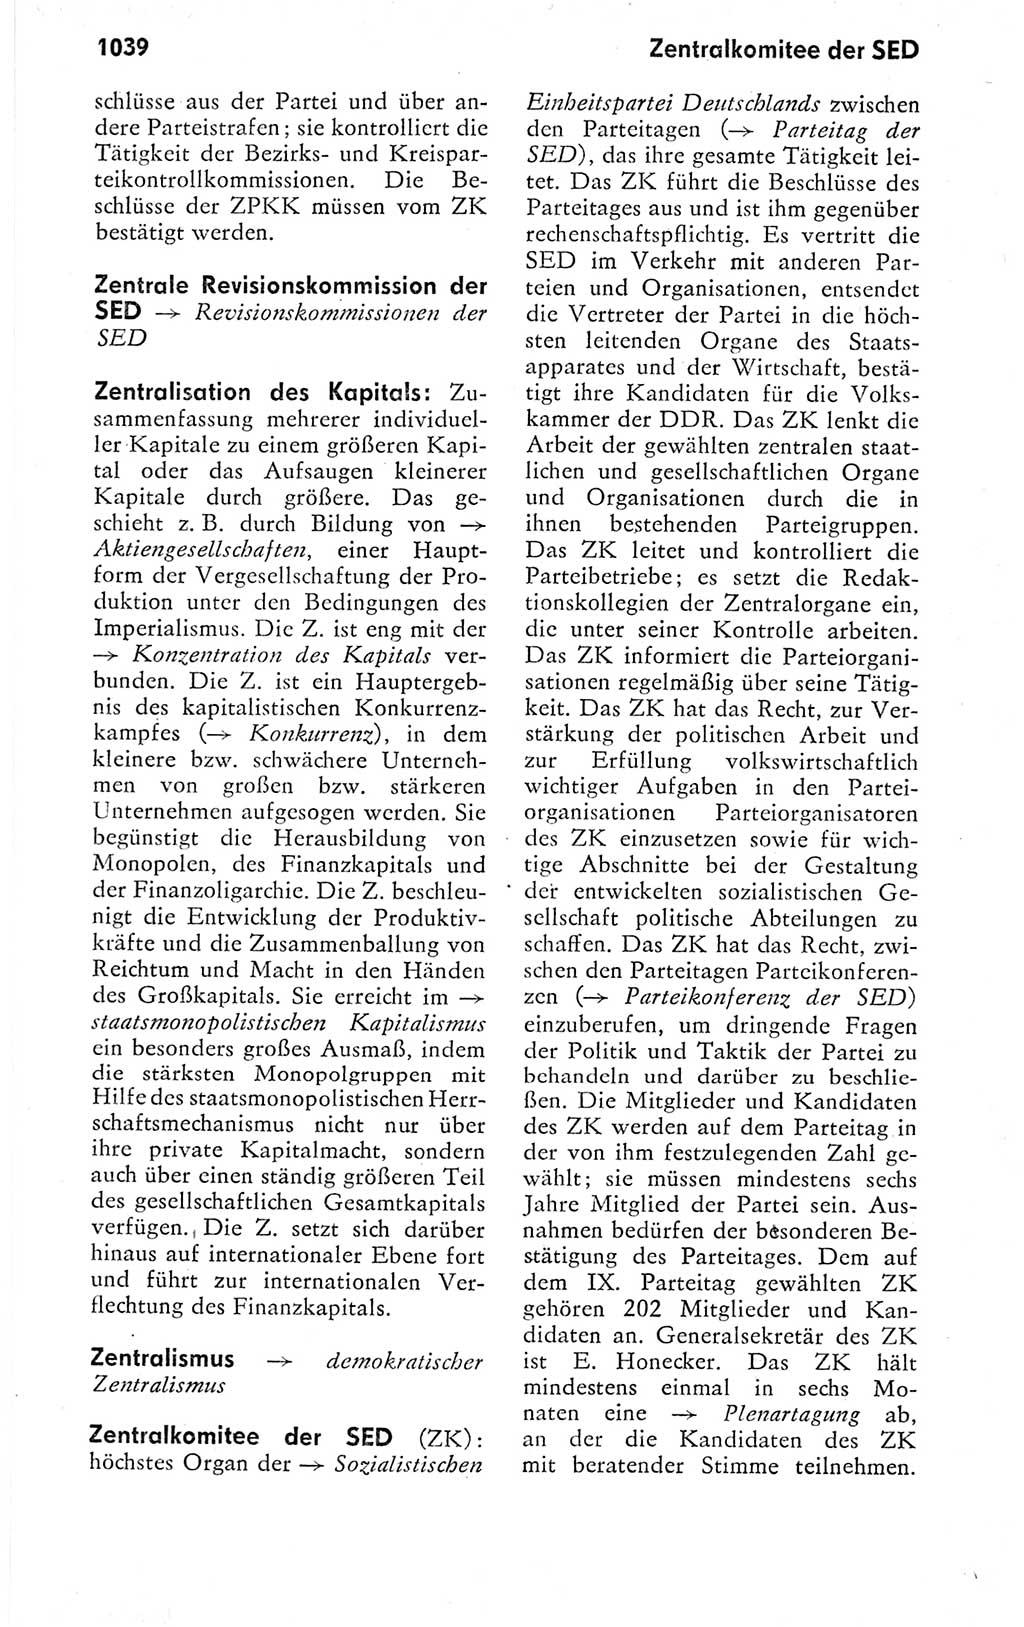 Kleines politisches Wörterbuch [Deutsche Demokratische Republik (DDR)] 1978, Seite 1039 (Kl. pol. Wb. DDR 1978, S. 1039)